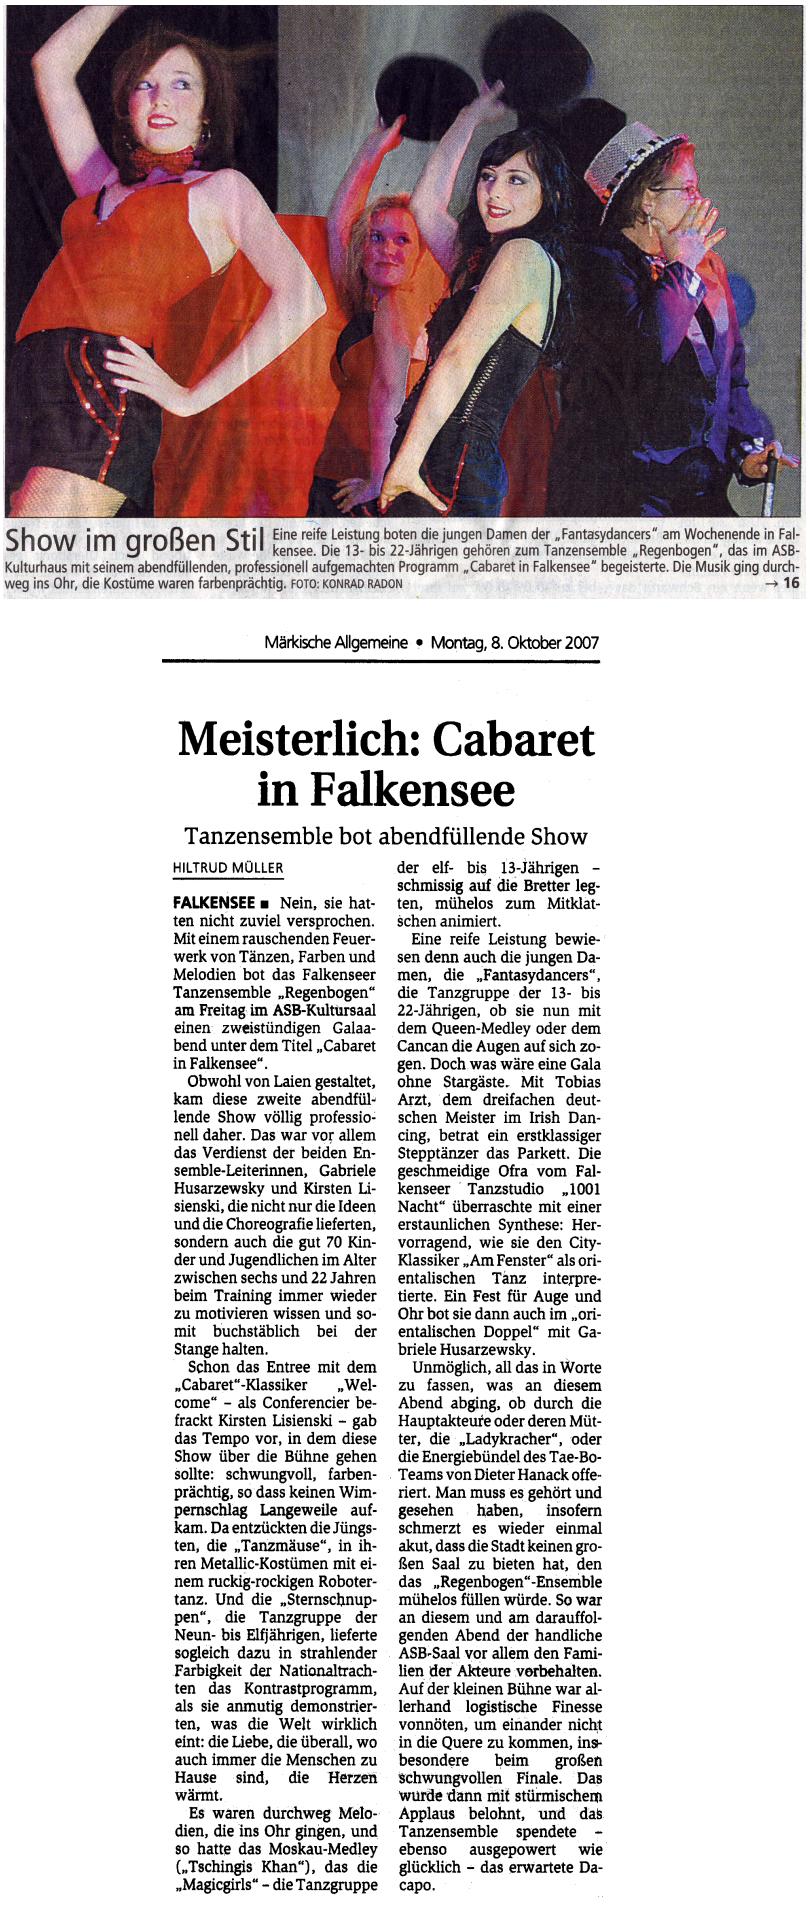 (Märkische Allgemeine vom 08.10.2007 zur zweiten Tanzshow am 05.10.2007)